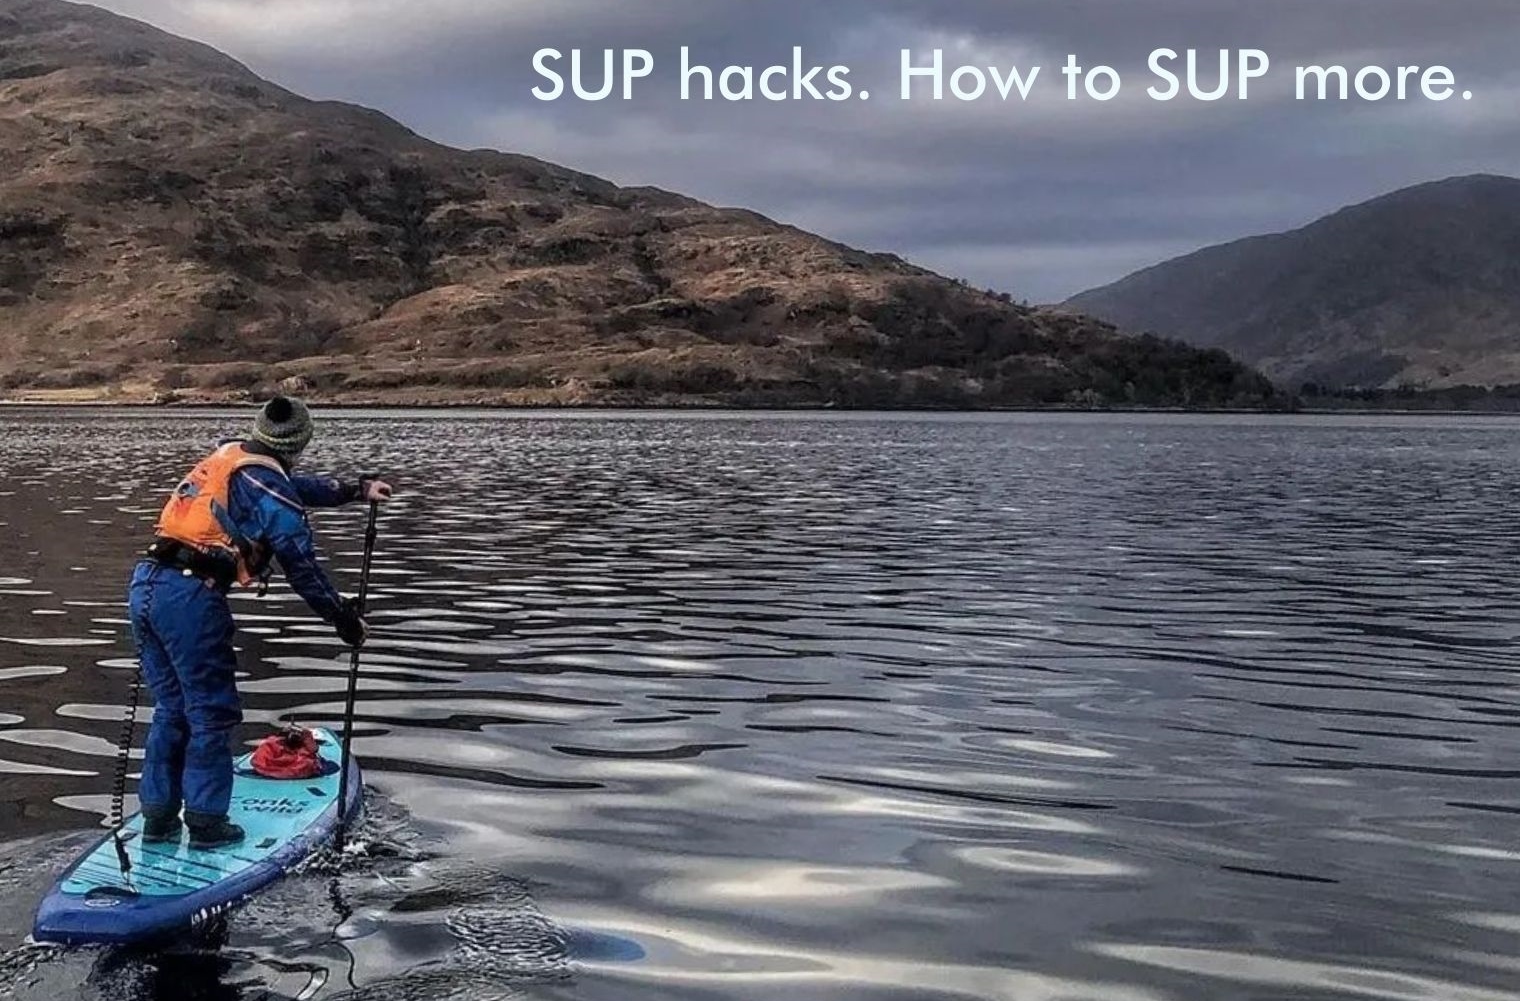 SUP hacks. How to SUP more.